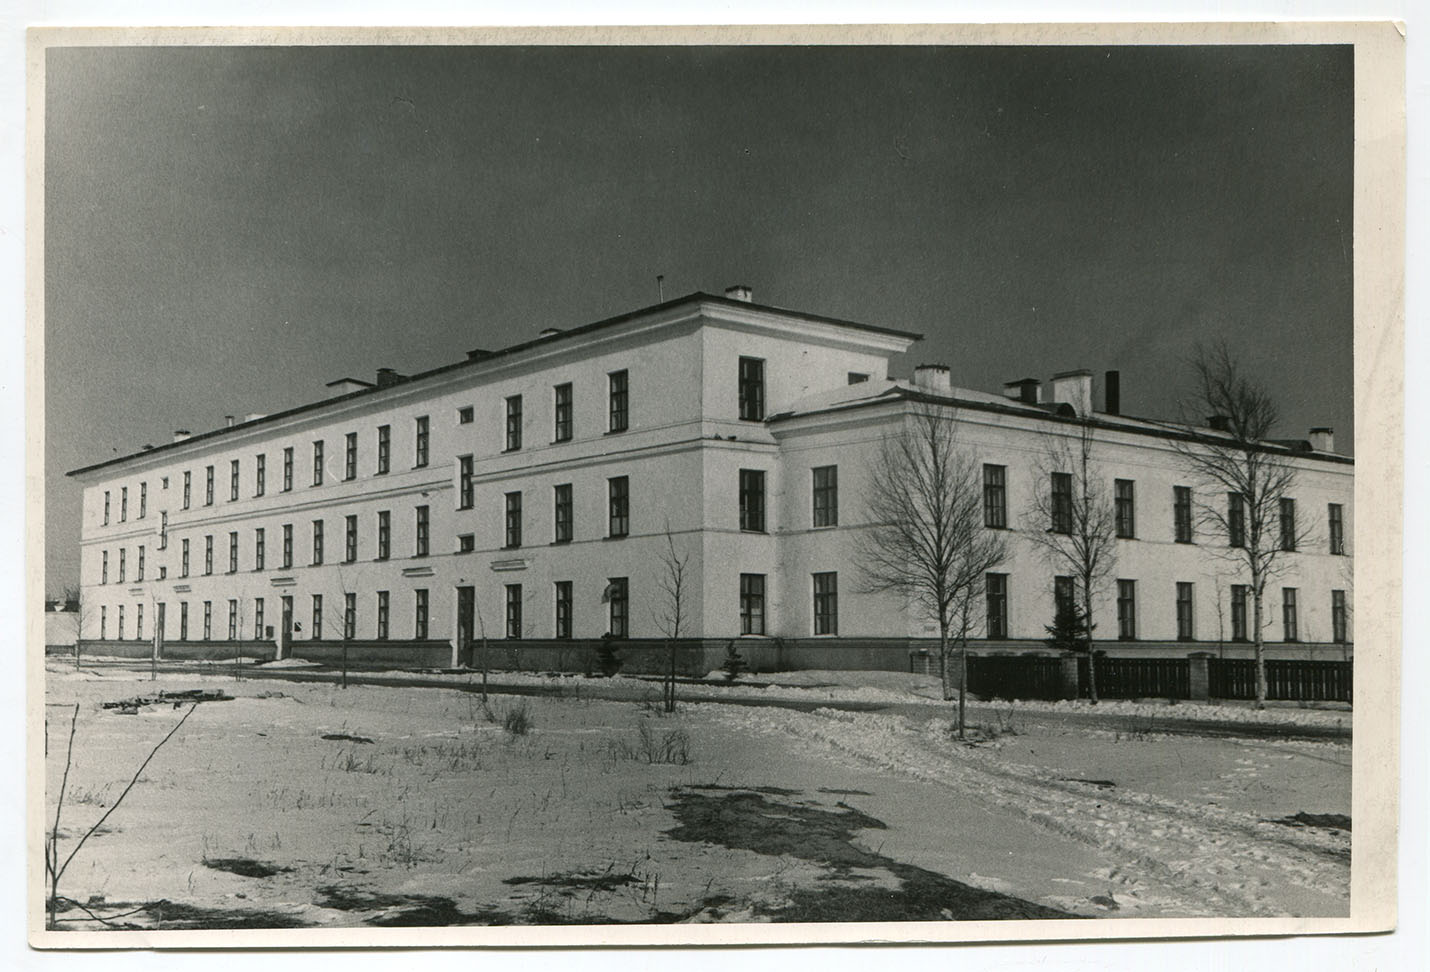 Pärnu City Hospital II Hospital Suur-Kuke 72